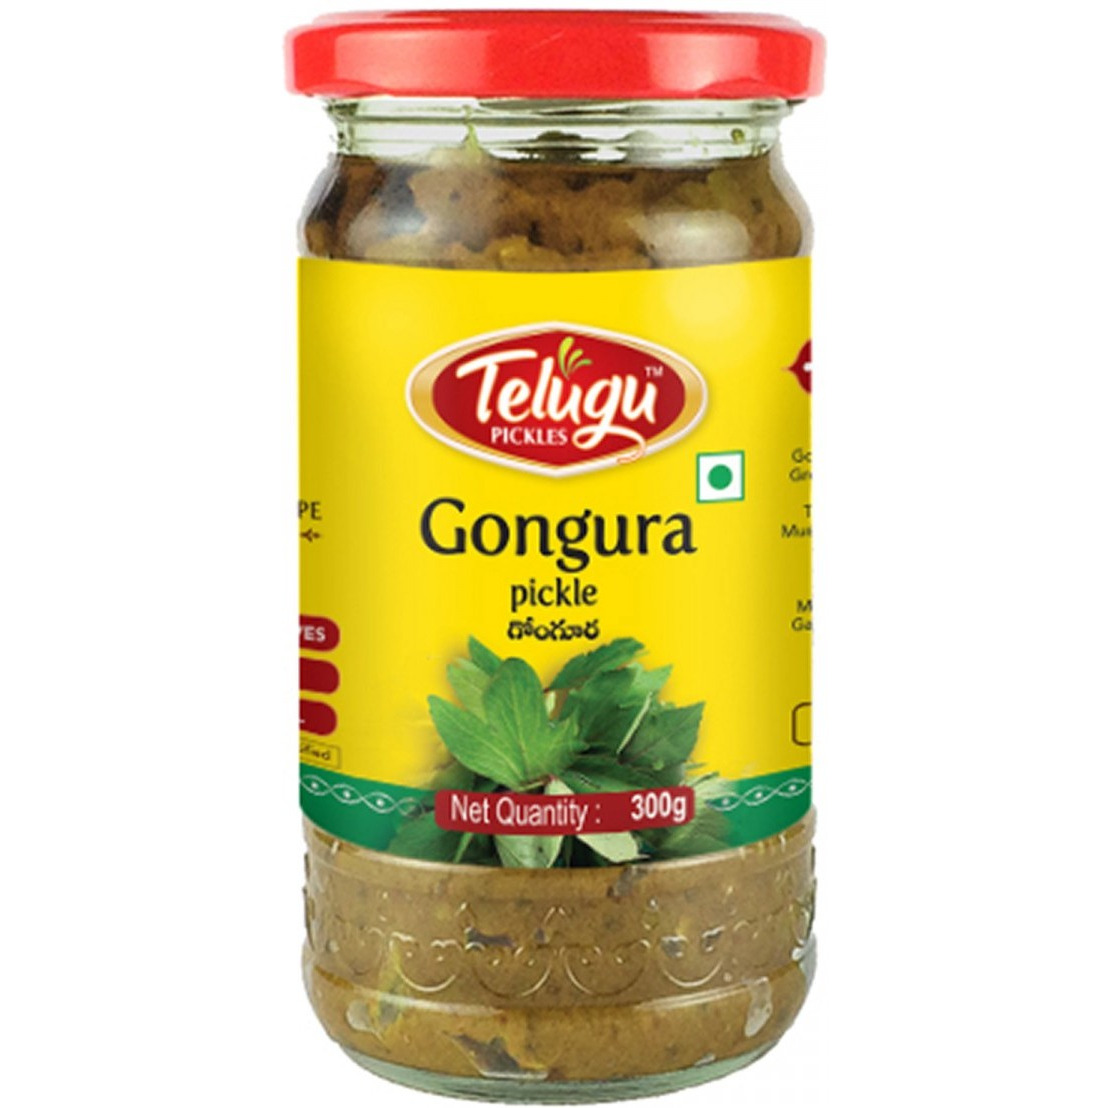 Case of 12 - Telugu Gongura Pickle Without Garlic - 300 Gm (10.58 Oz)